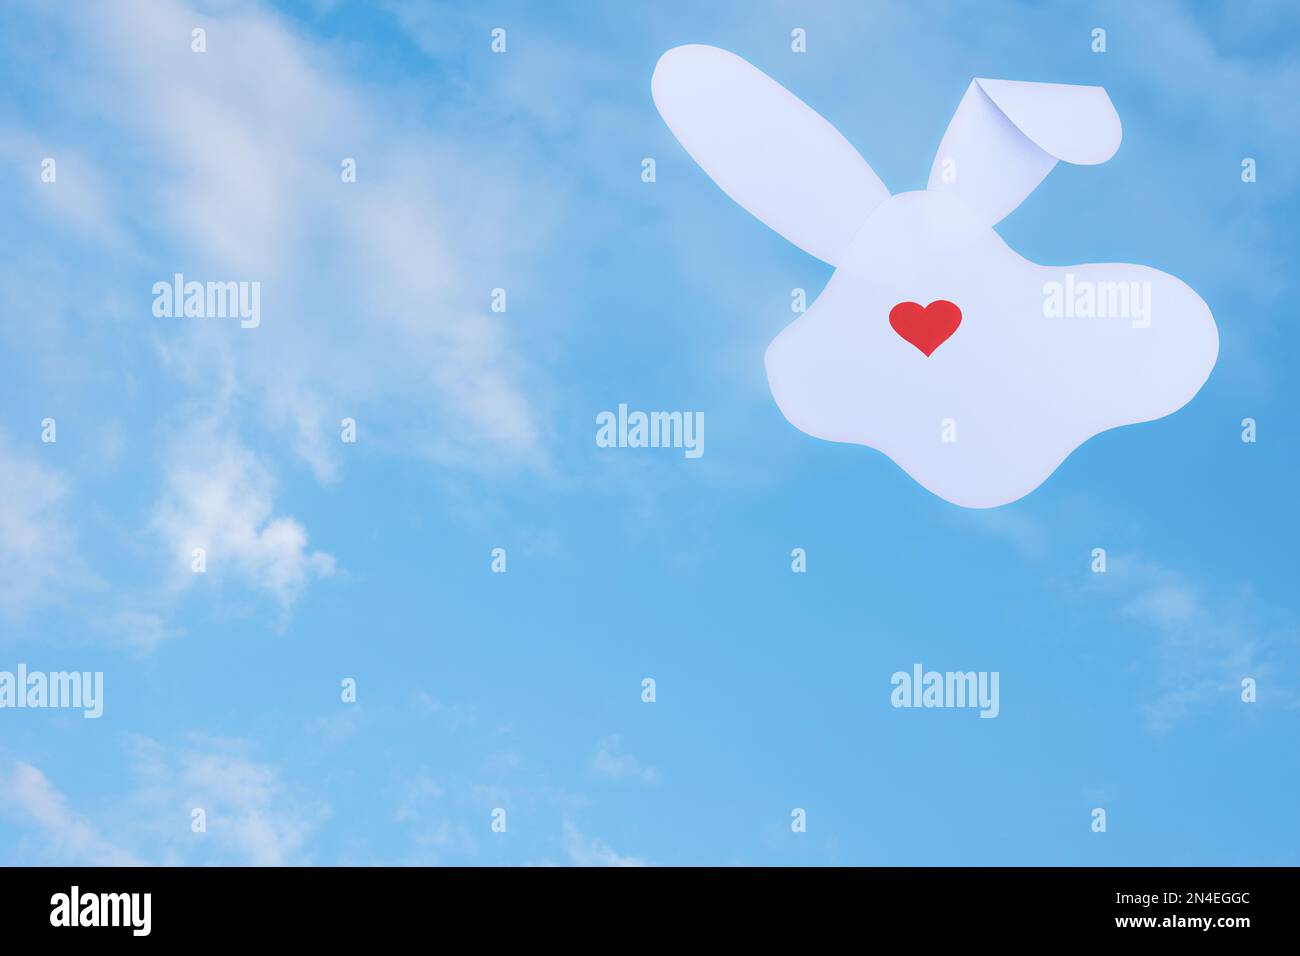 Carte créative composée d'une silhouette de lapin en papier blanc et d'un cœur rouge au lieu d'un nez sur fond ciel nuageux. Concept de vacances de printemps minimales Banque D'Images